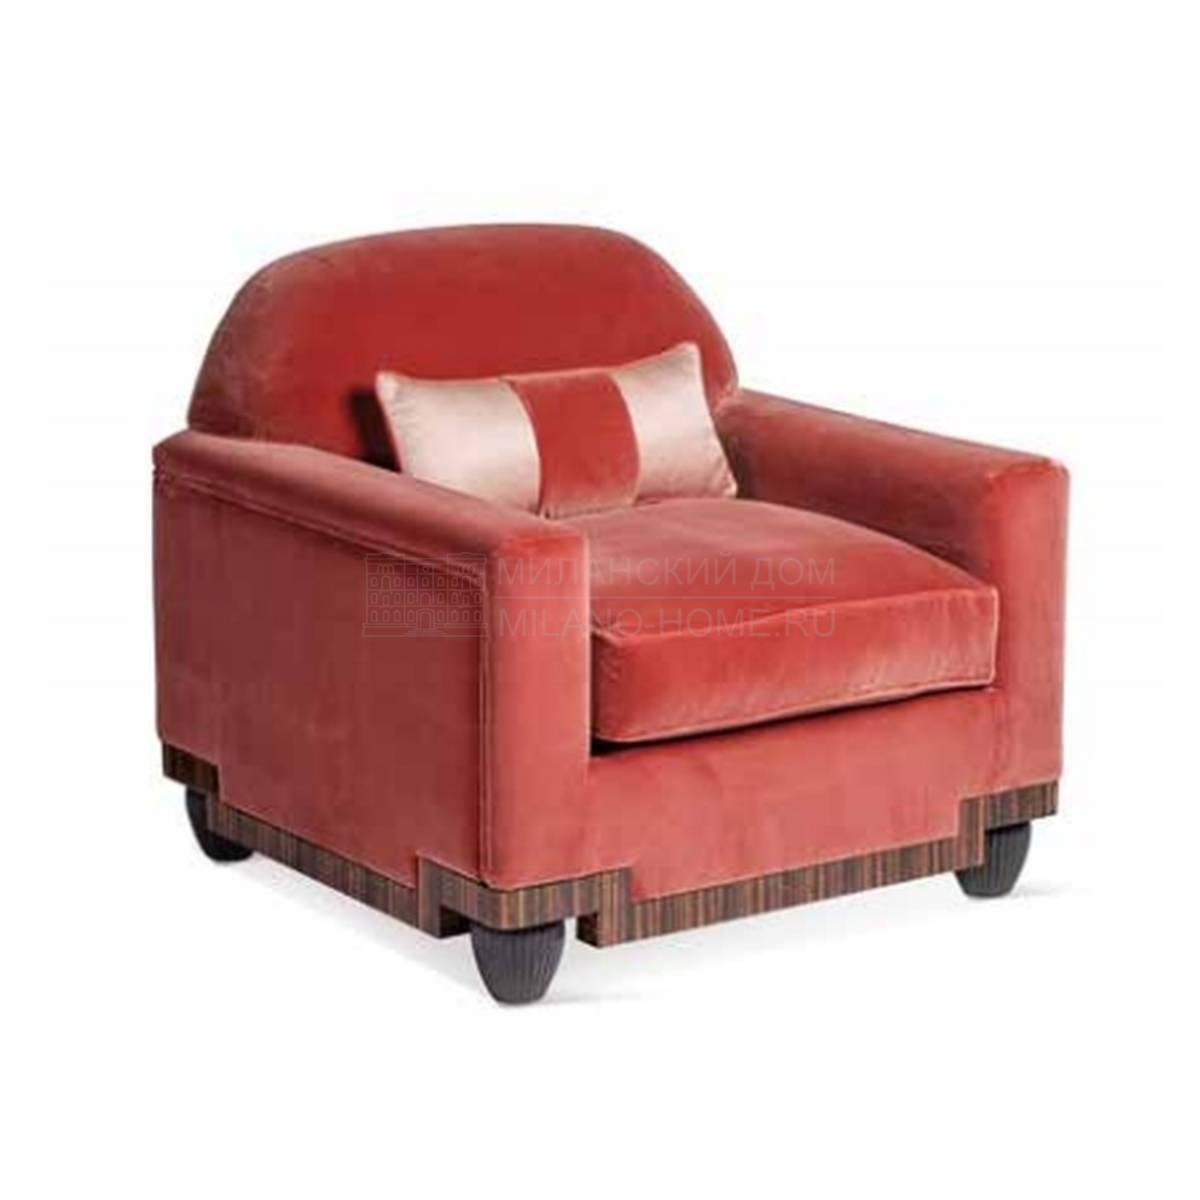 Кресло art.8703 armchair из Италии фабрики SALDA